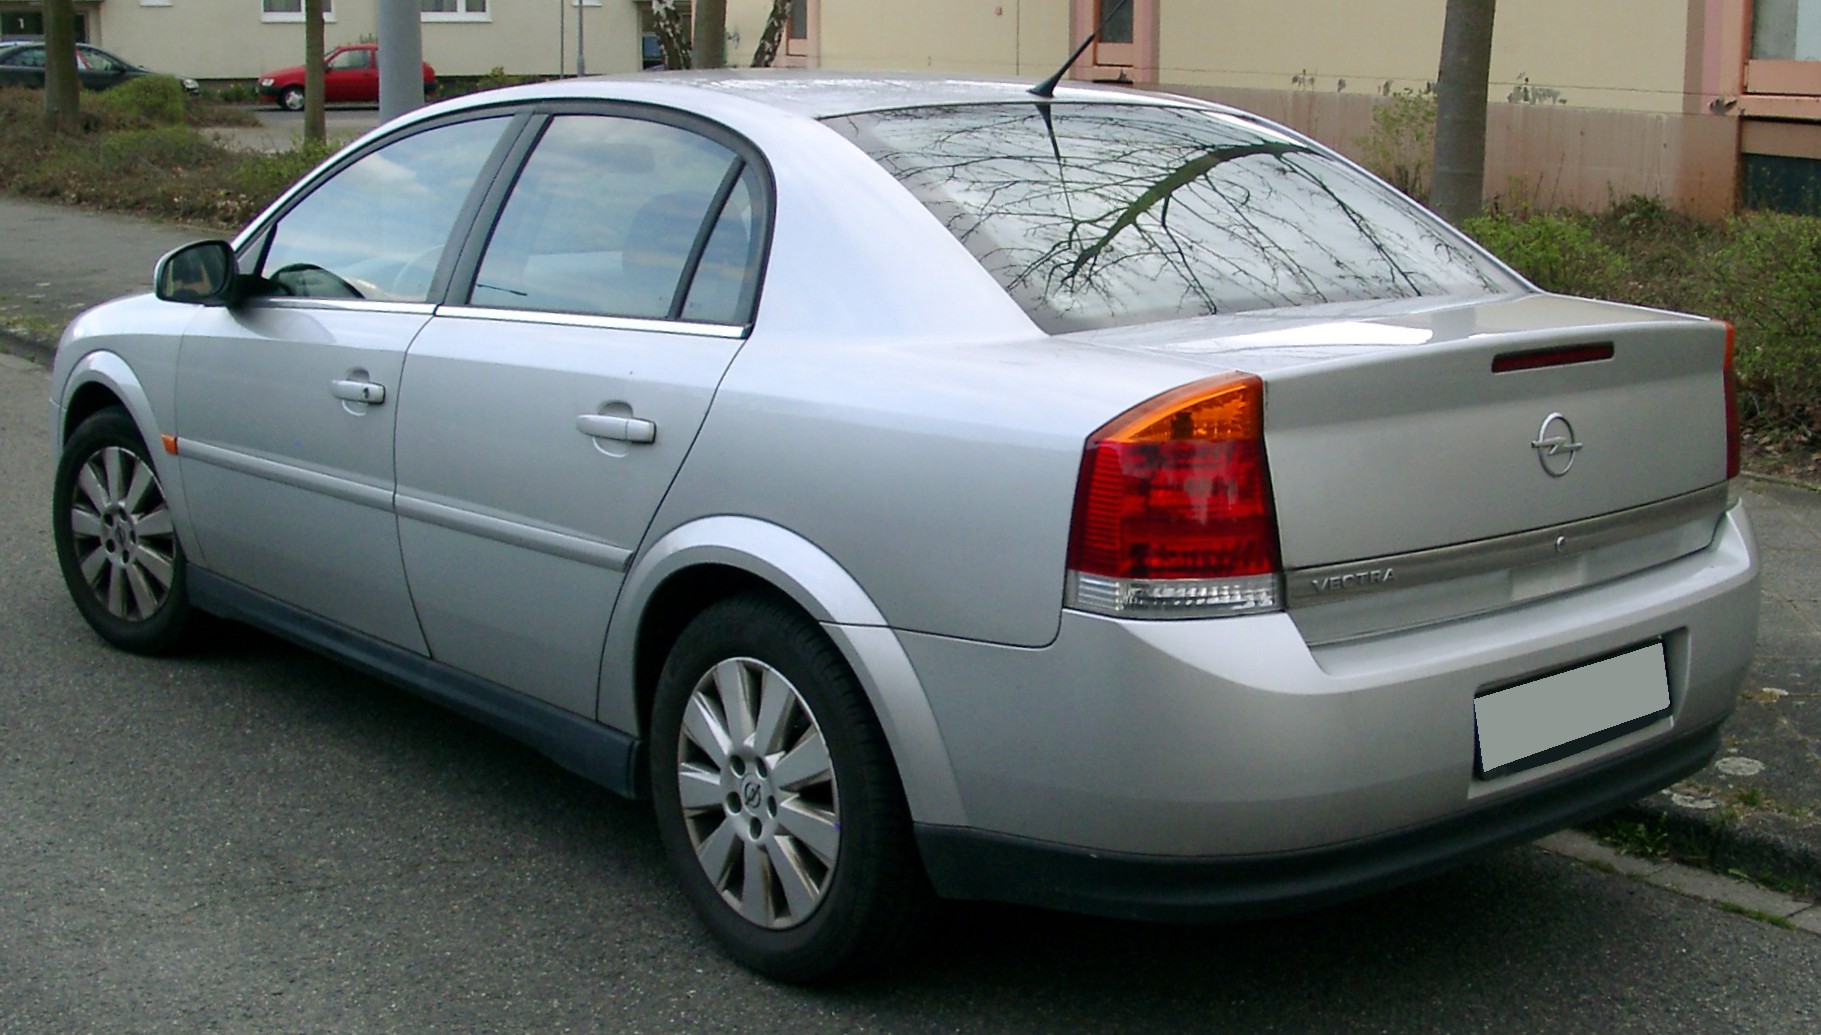 File:Opel Vectra C rear 20080331.jpg - Wikimedia Commons